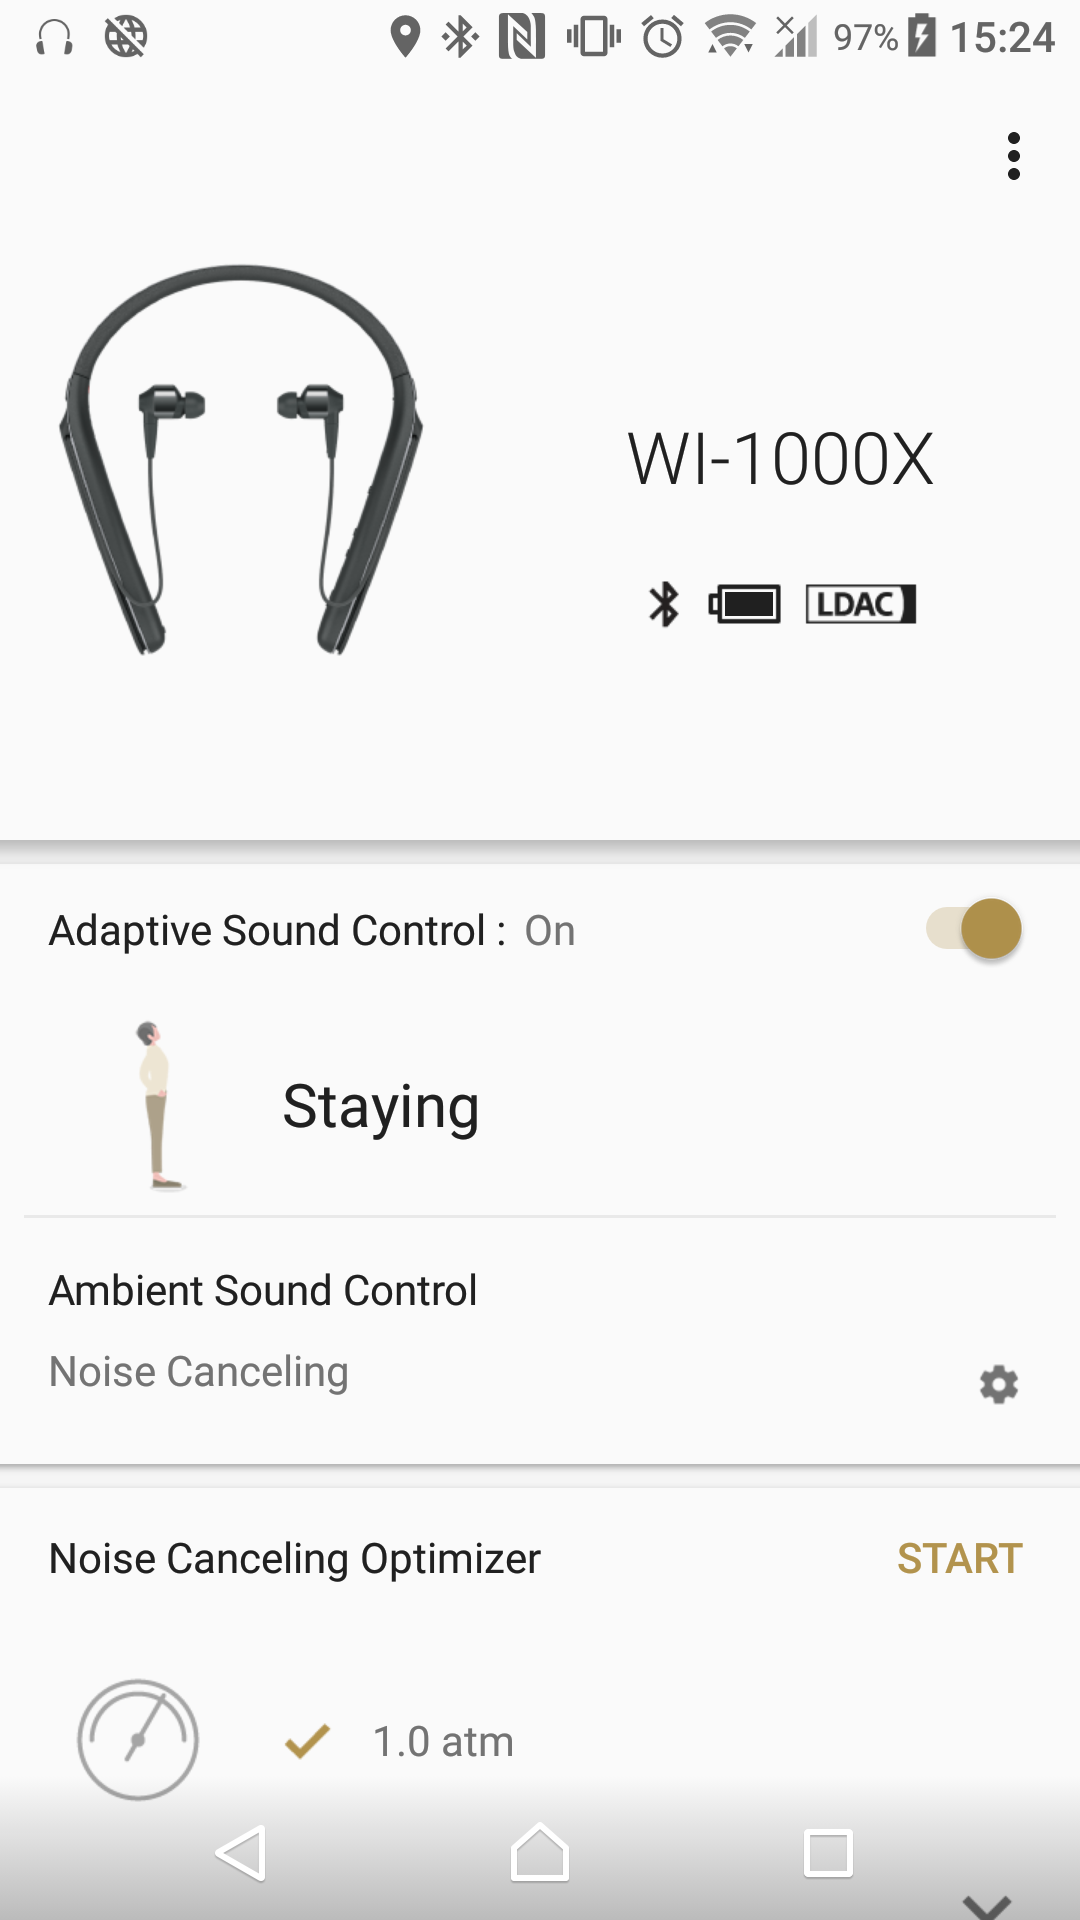 [Review] รีวิว Sony WI-1000X หูฟัง Wireless In-ear ไดรเวอร์ผสม ที่มาพร้อมระบบตัดเสียงรบกวนระดับทอปในตลาด